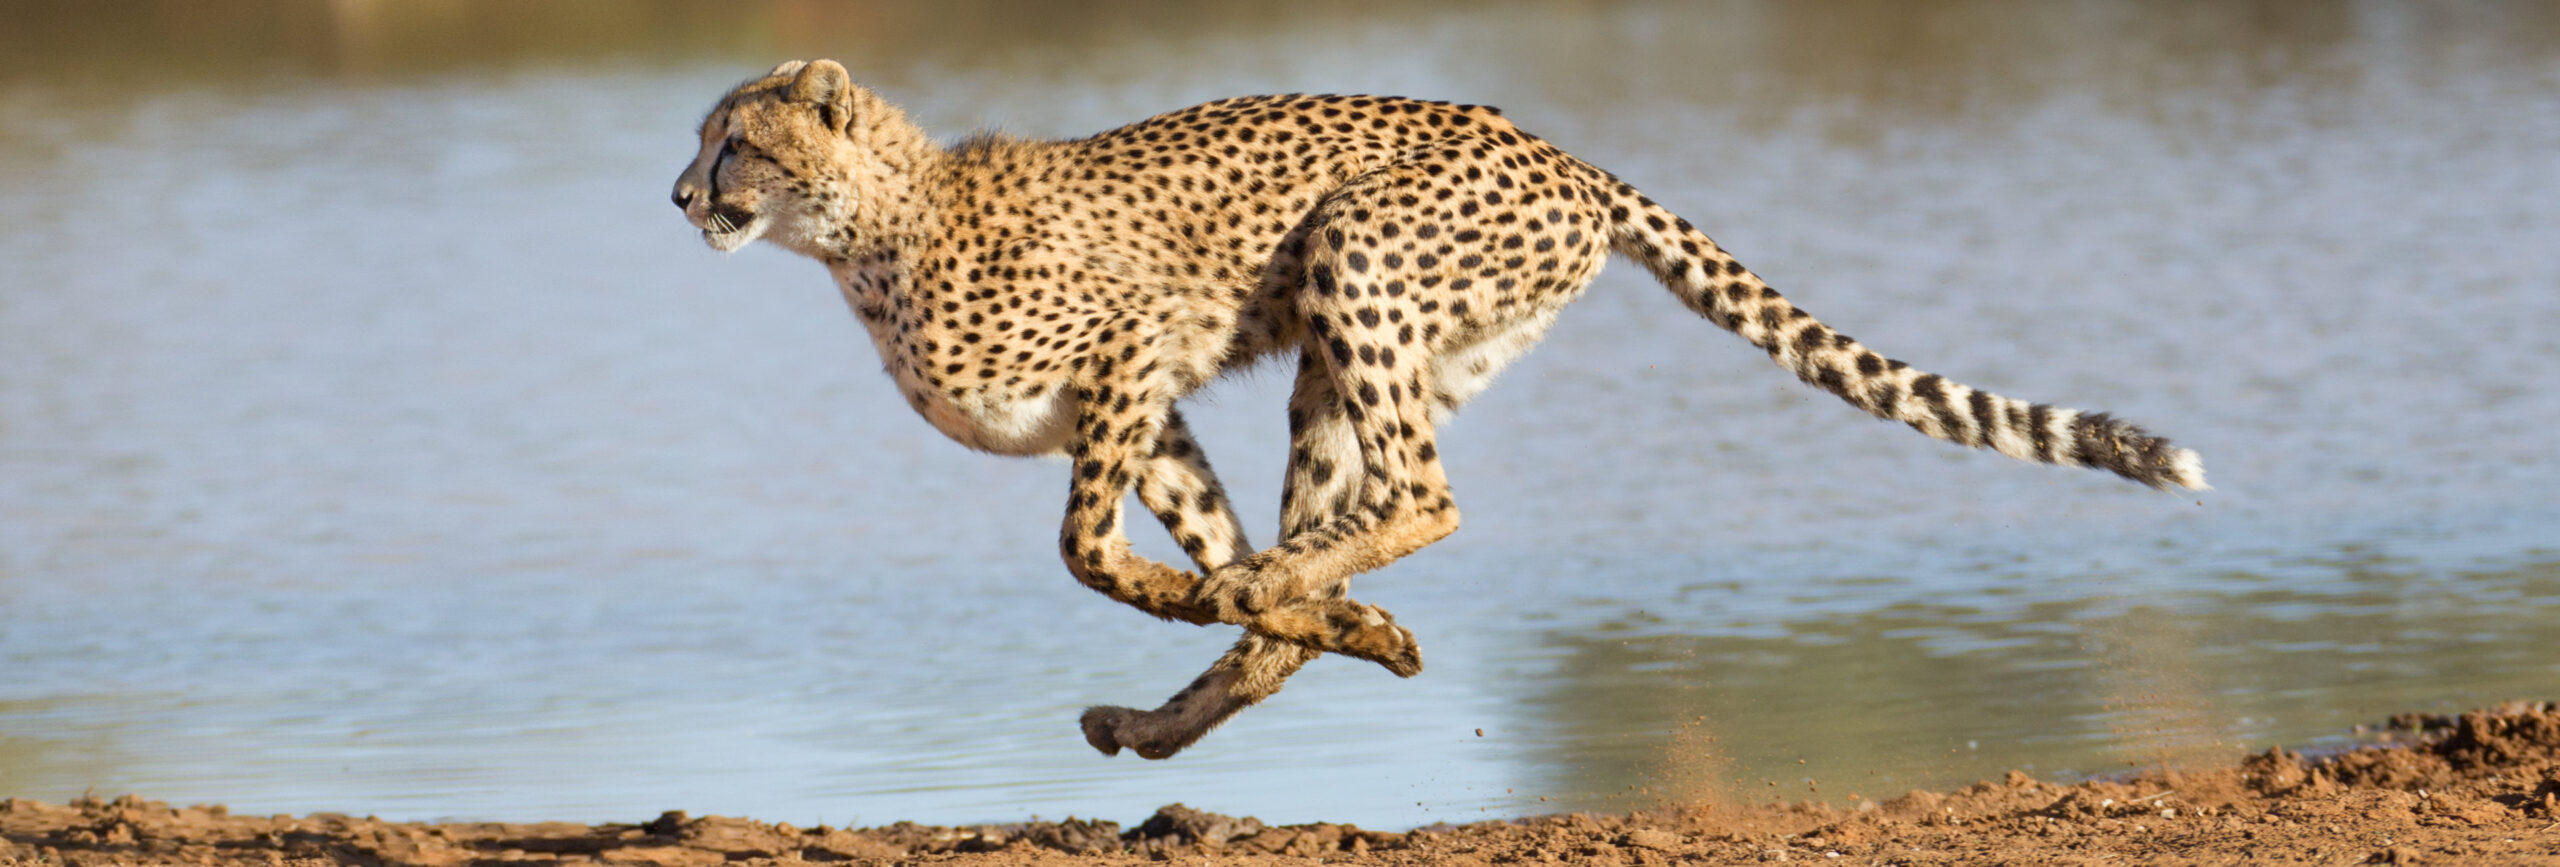 Gepard in rasanter Bewegung mit einem Gewässer im Hintergrund - insysta